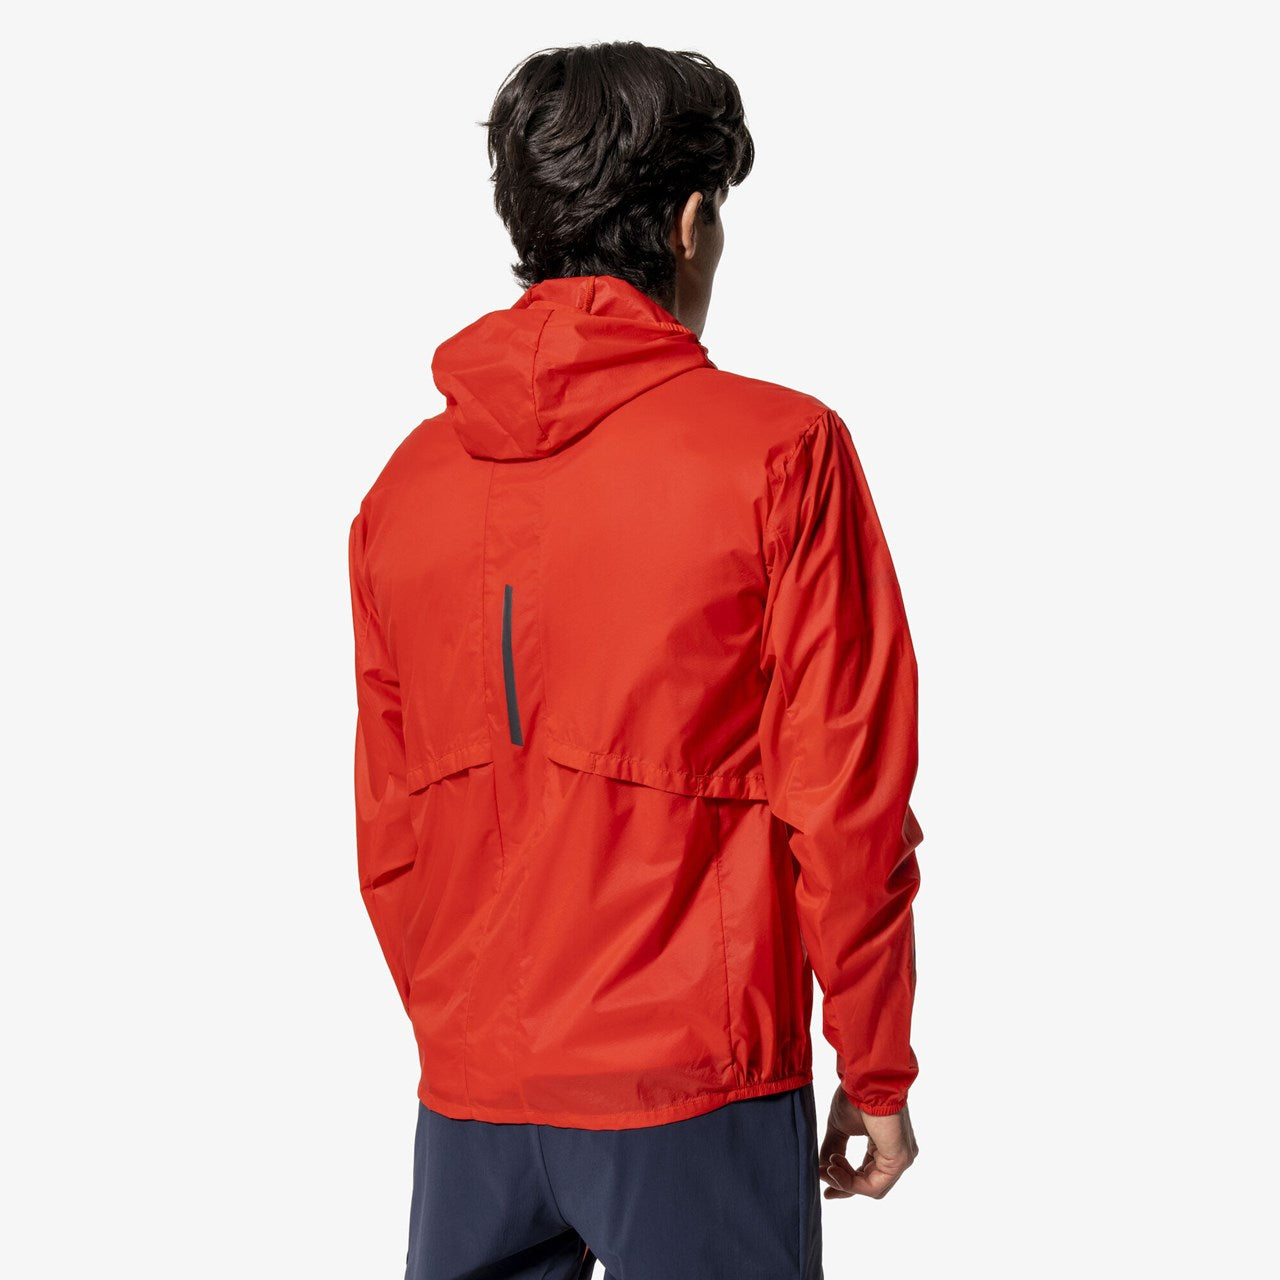 Pace - Men's Wind Light Hooded Jacket